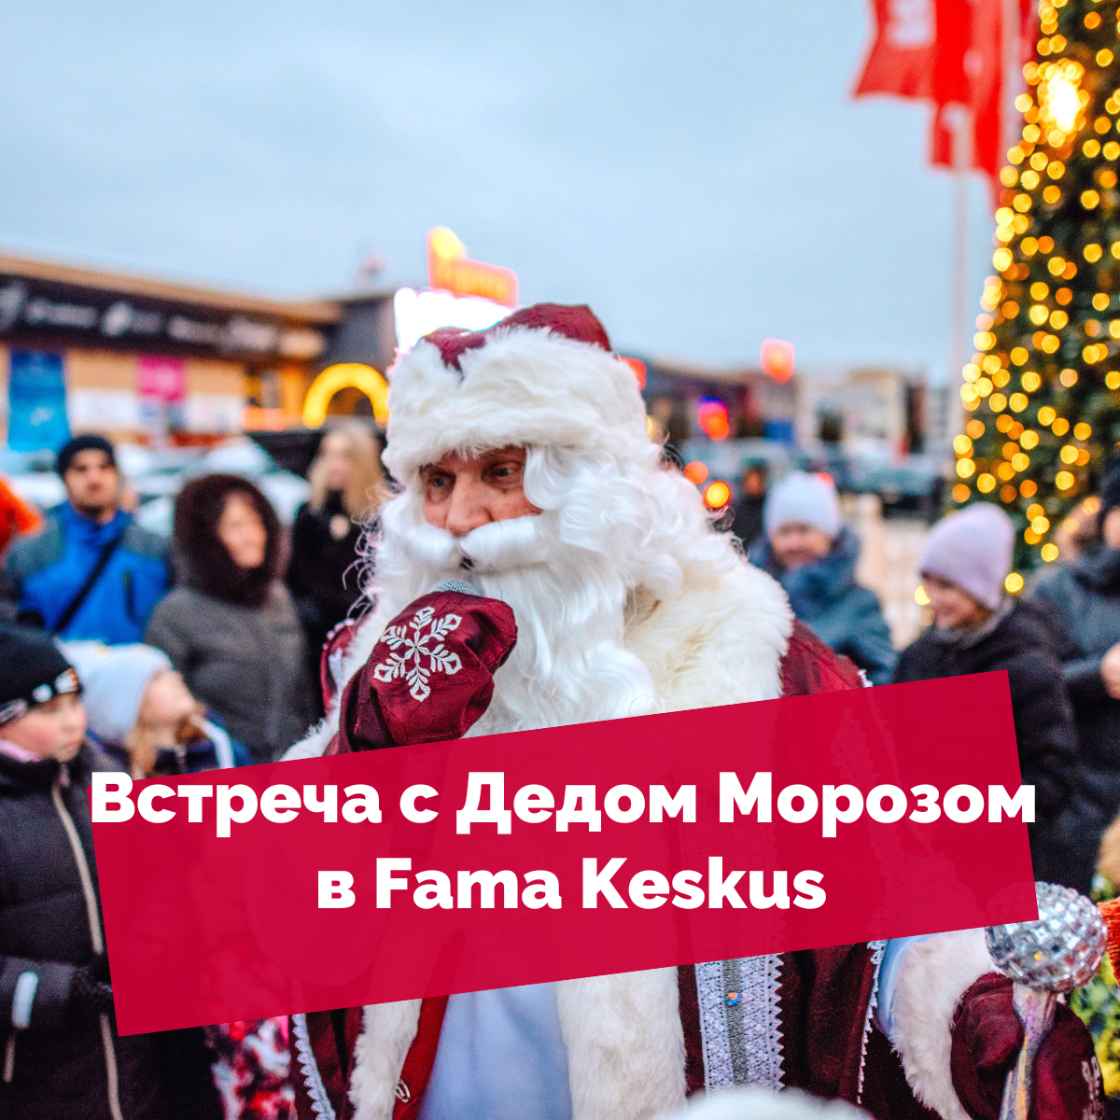 Встреча с Дедом Морозом в Fama Keskus!